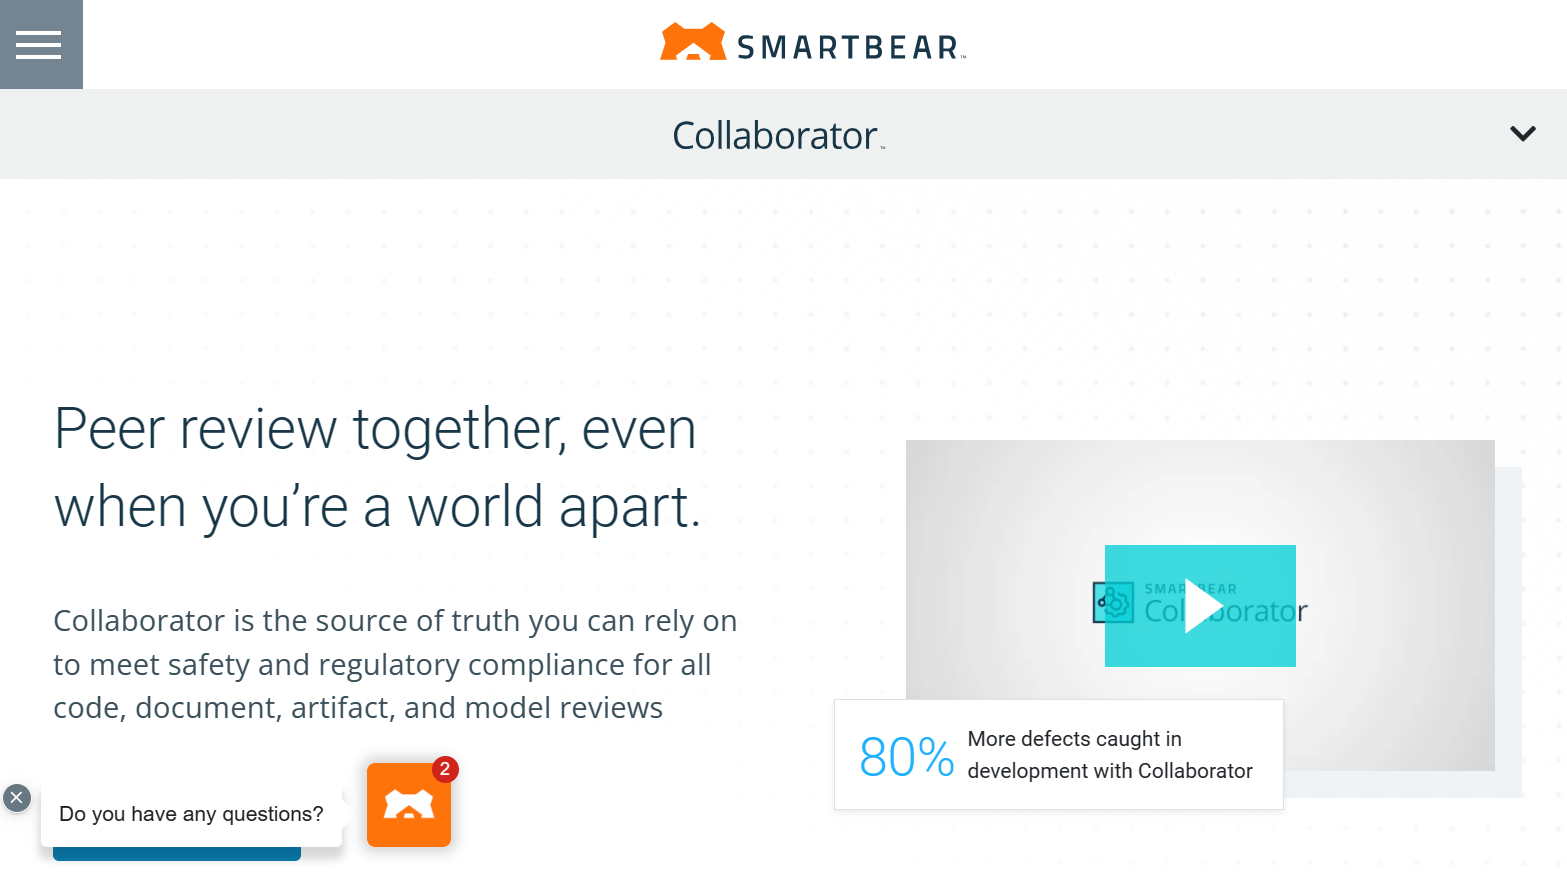 smartbear.com – Peer review together